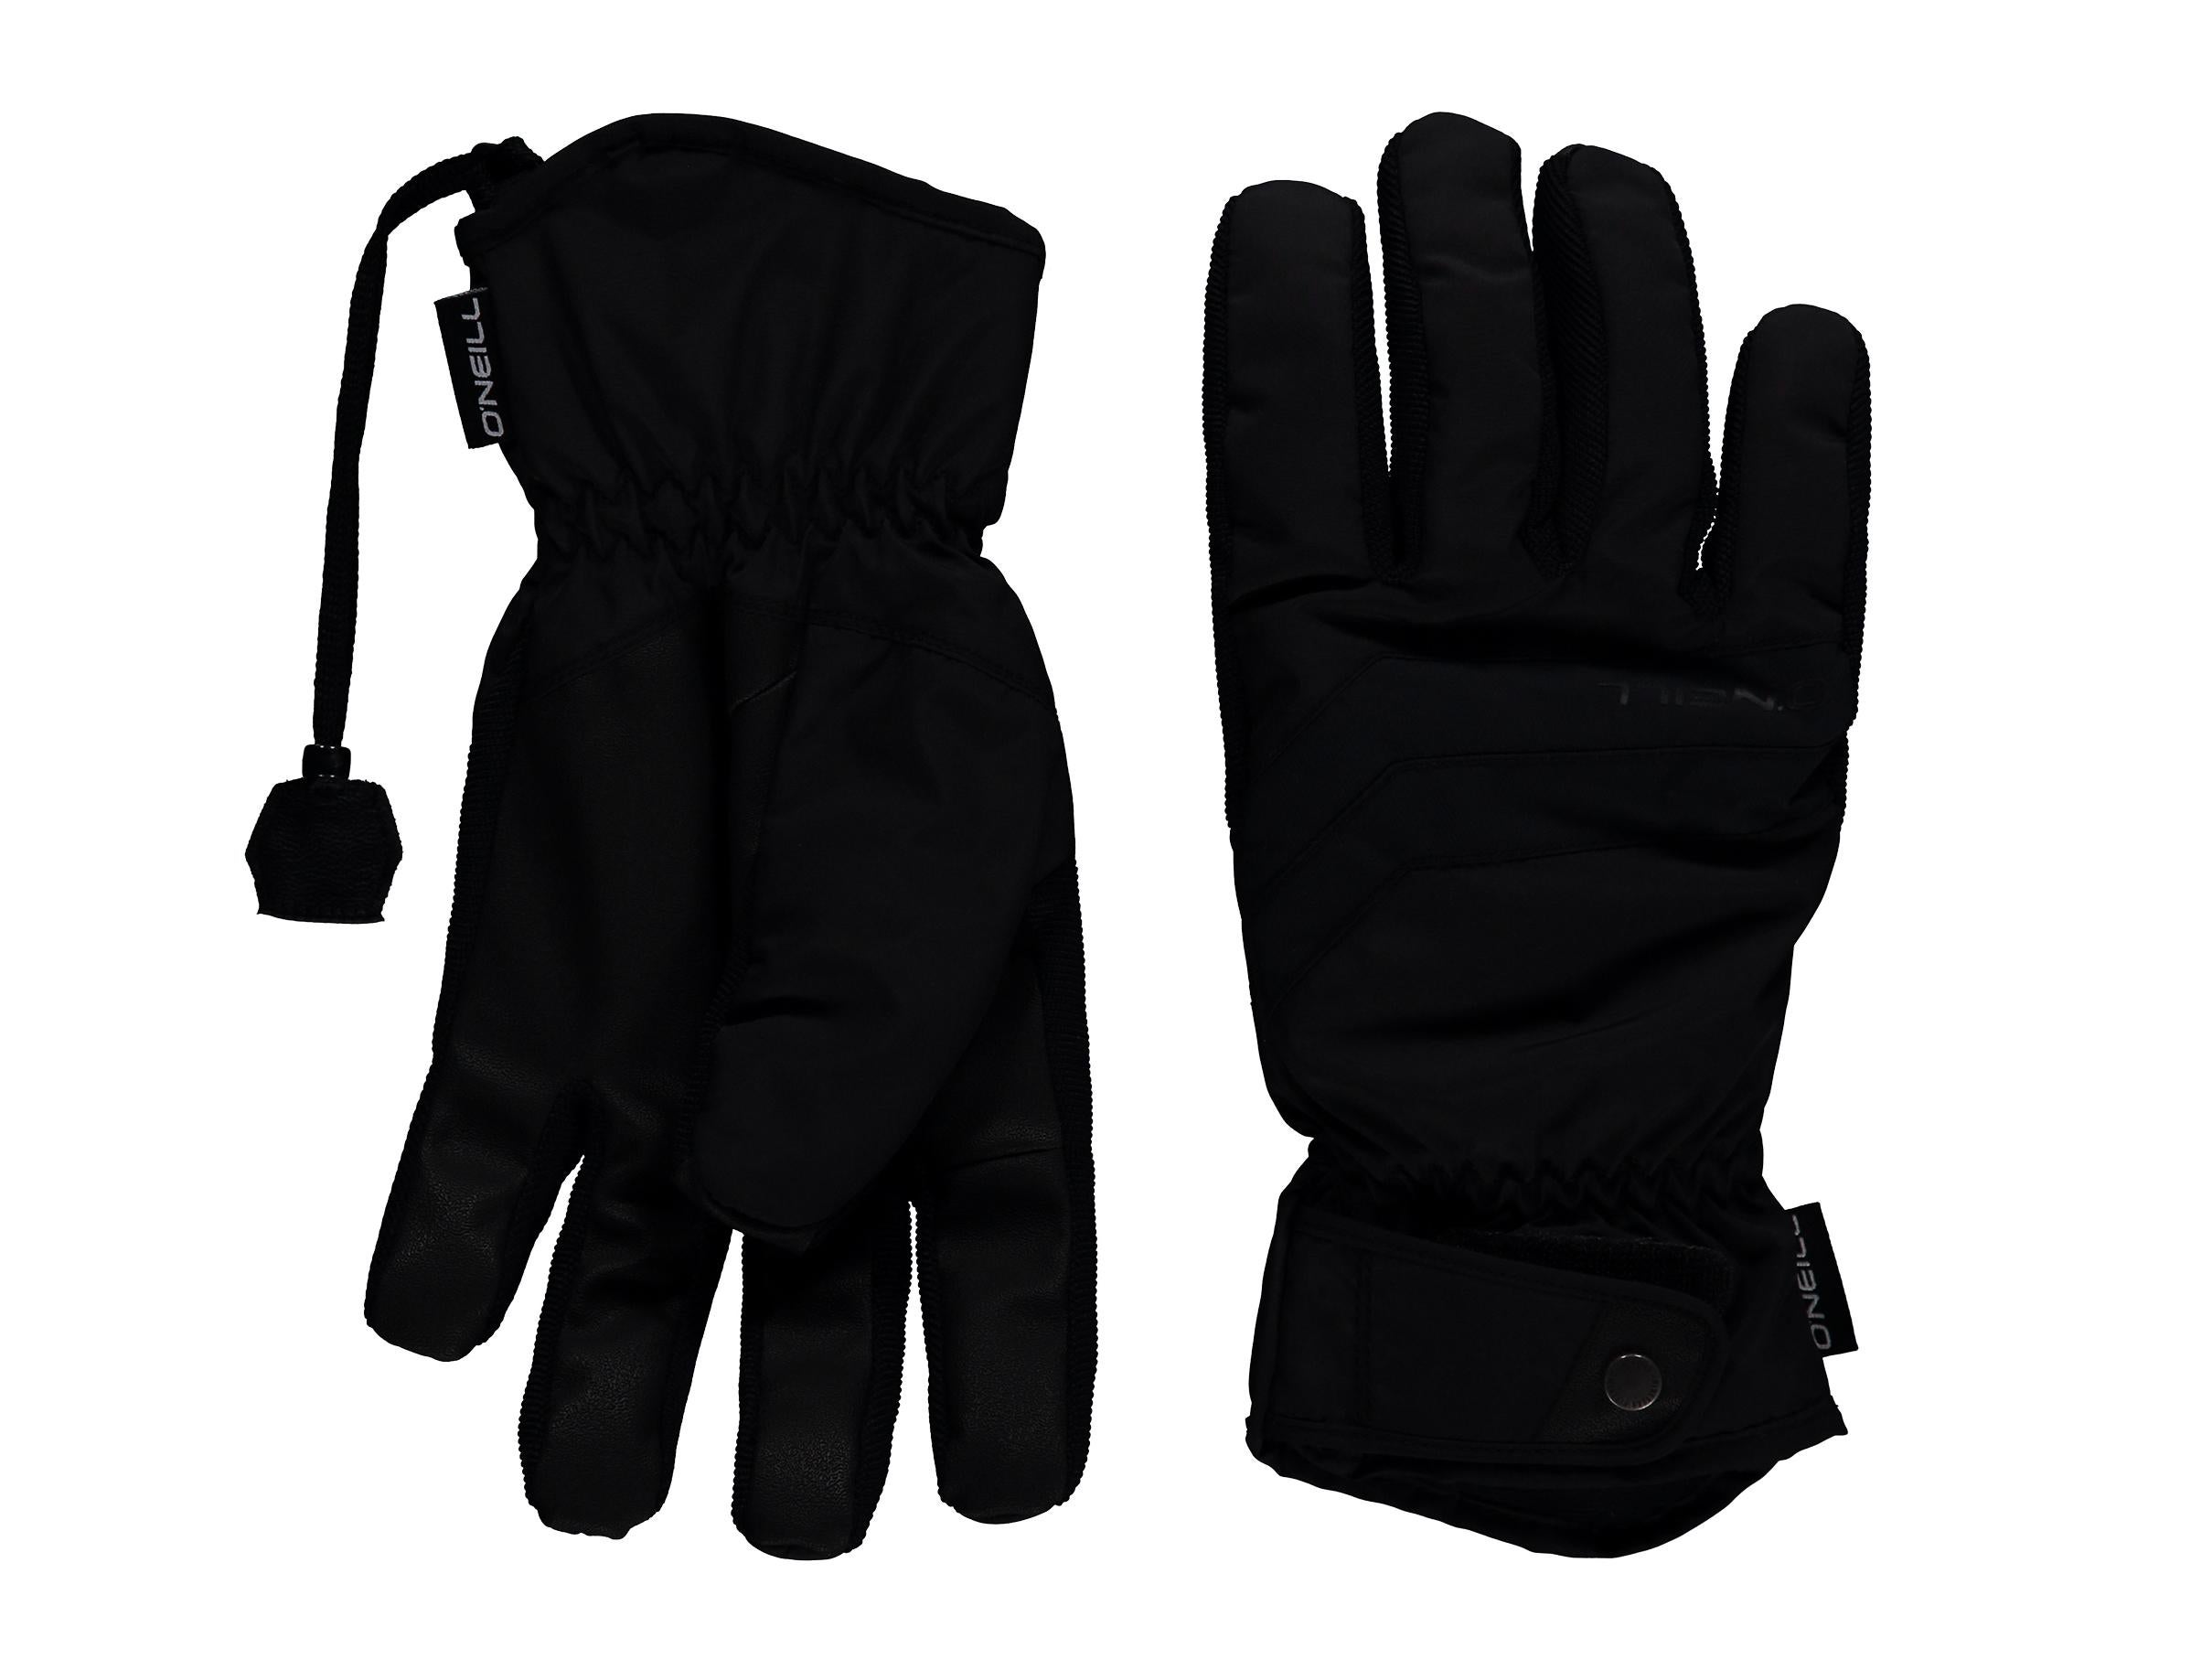 O'NEILL Womens Ski Snow Gloves Style & Colour Choice // CLEARANCE SALE 